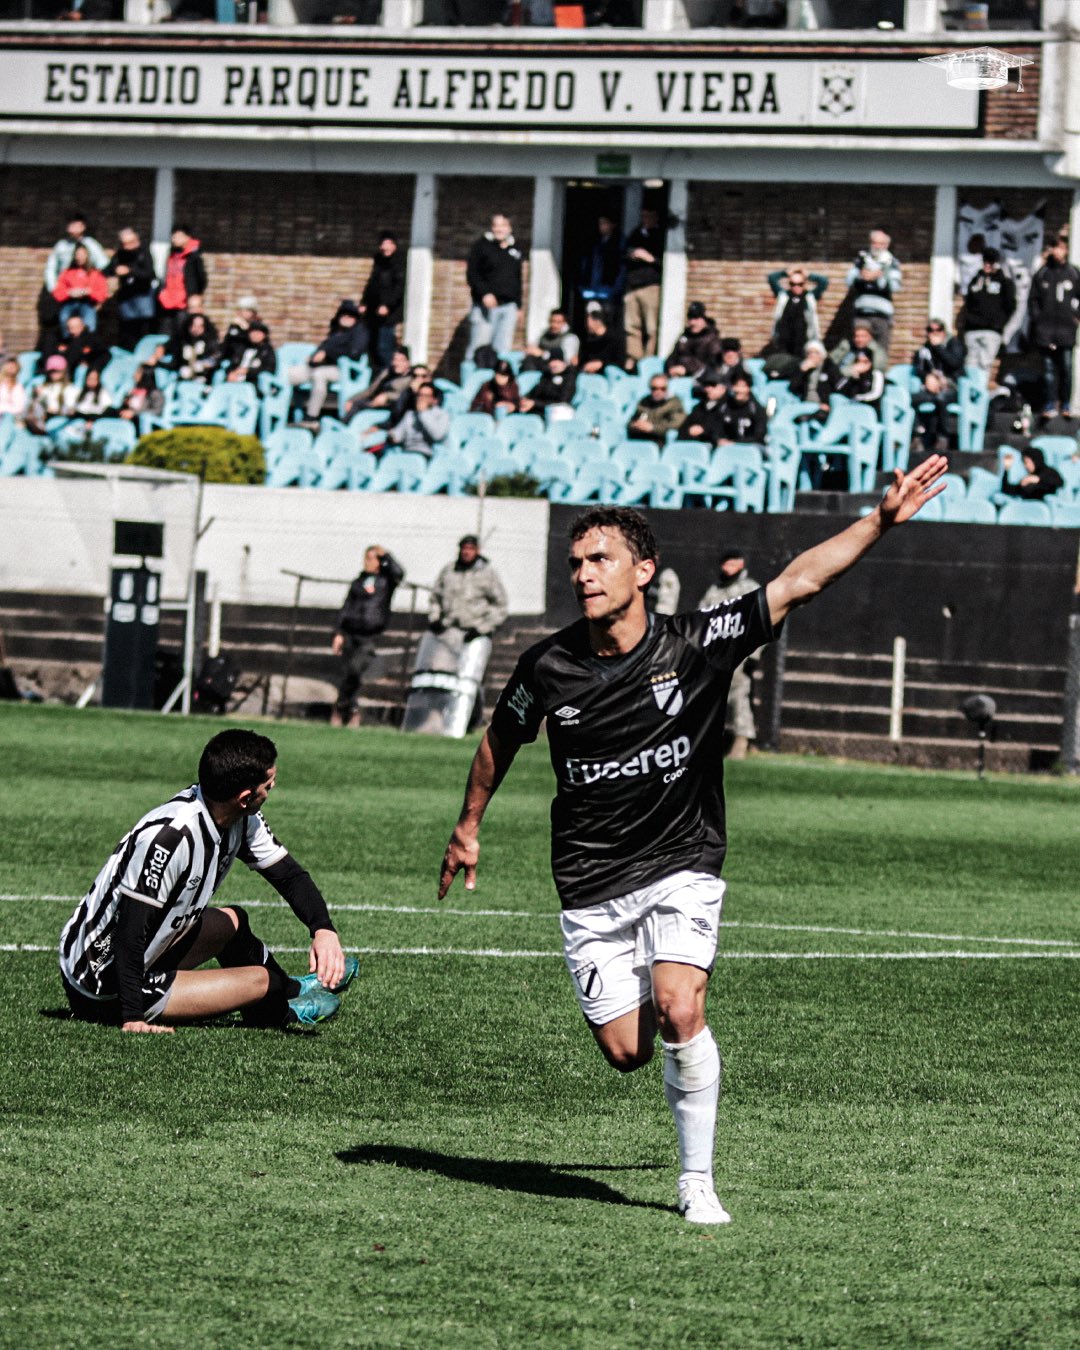 Wanderers 0 – 3 Danubio. Tres goles de “papelito” en el primer tiempo